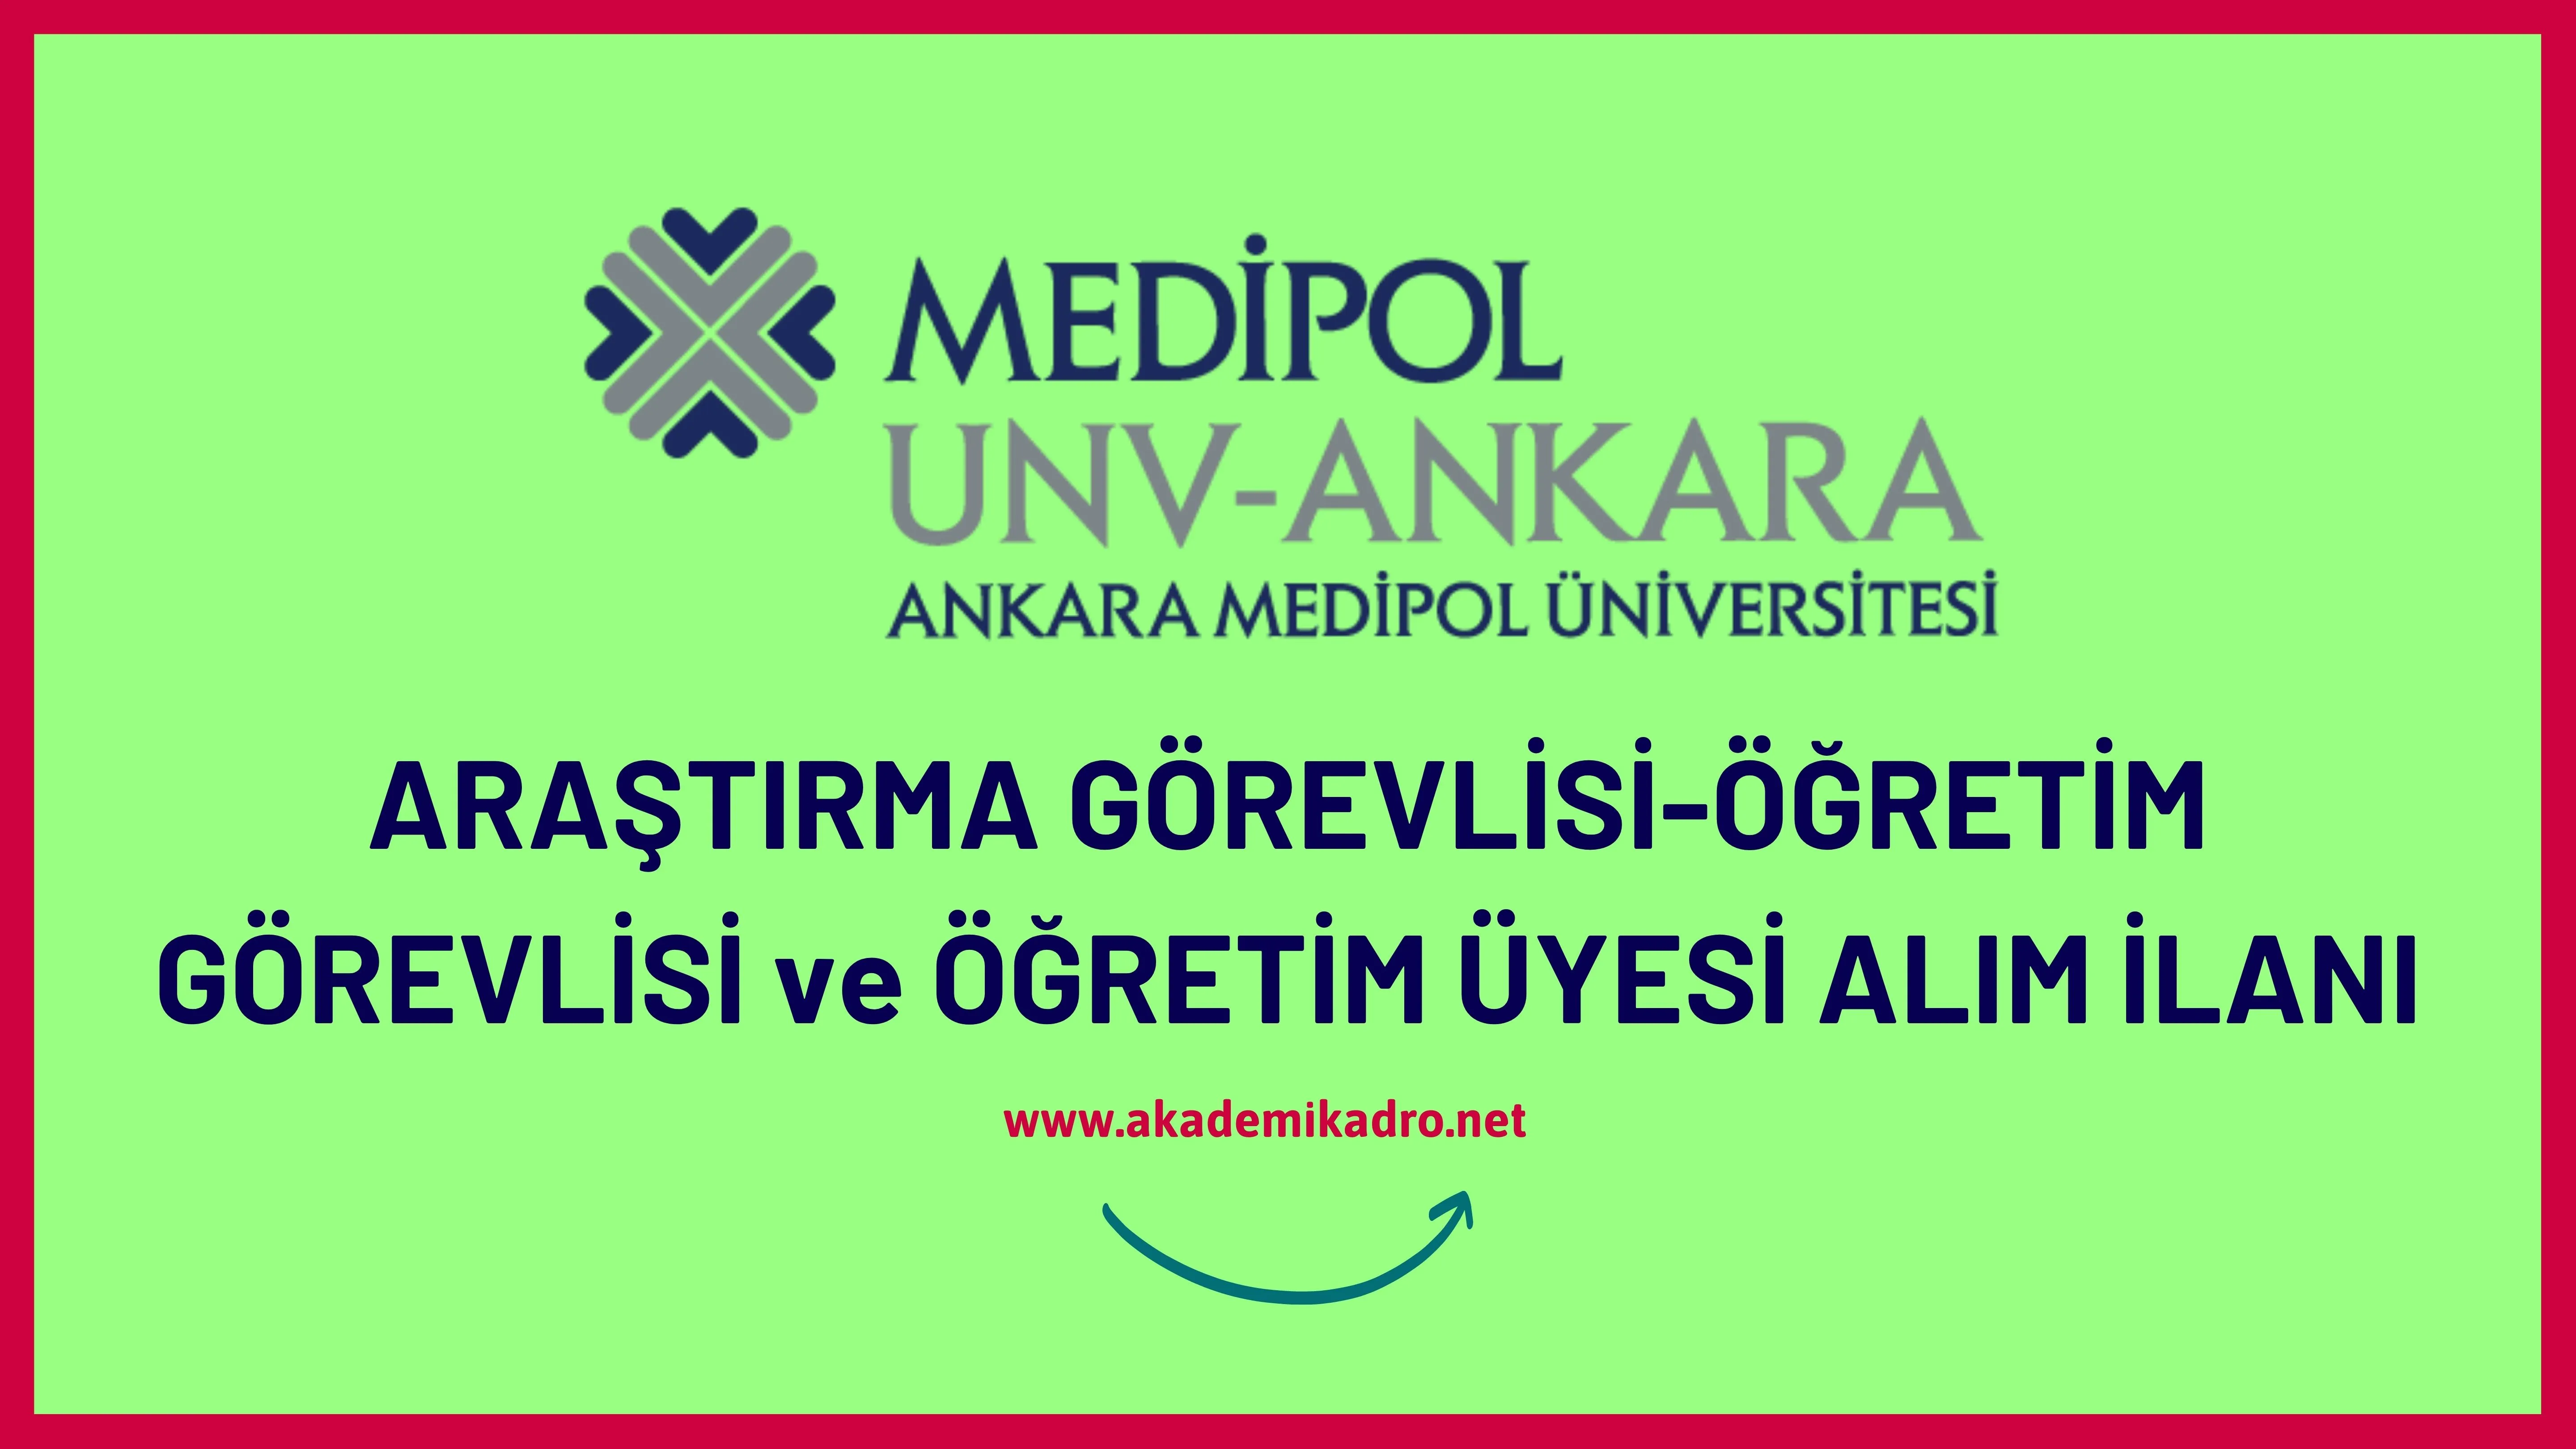 Ankara Medipol Üniversitesi 6 Öğretim görevlisi ve 15 Öğretim üyesi olmak üzere 21 Öğretim elemanı alacak.